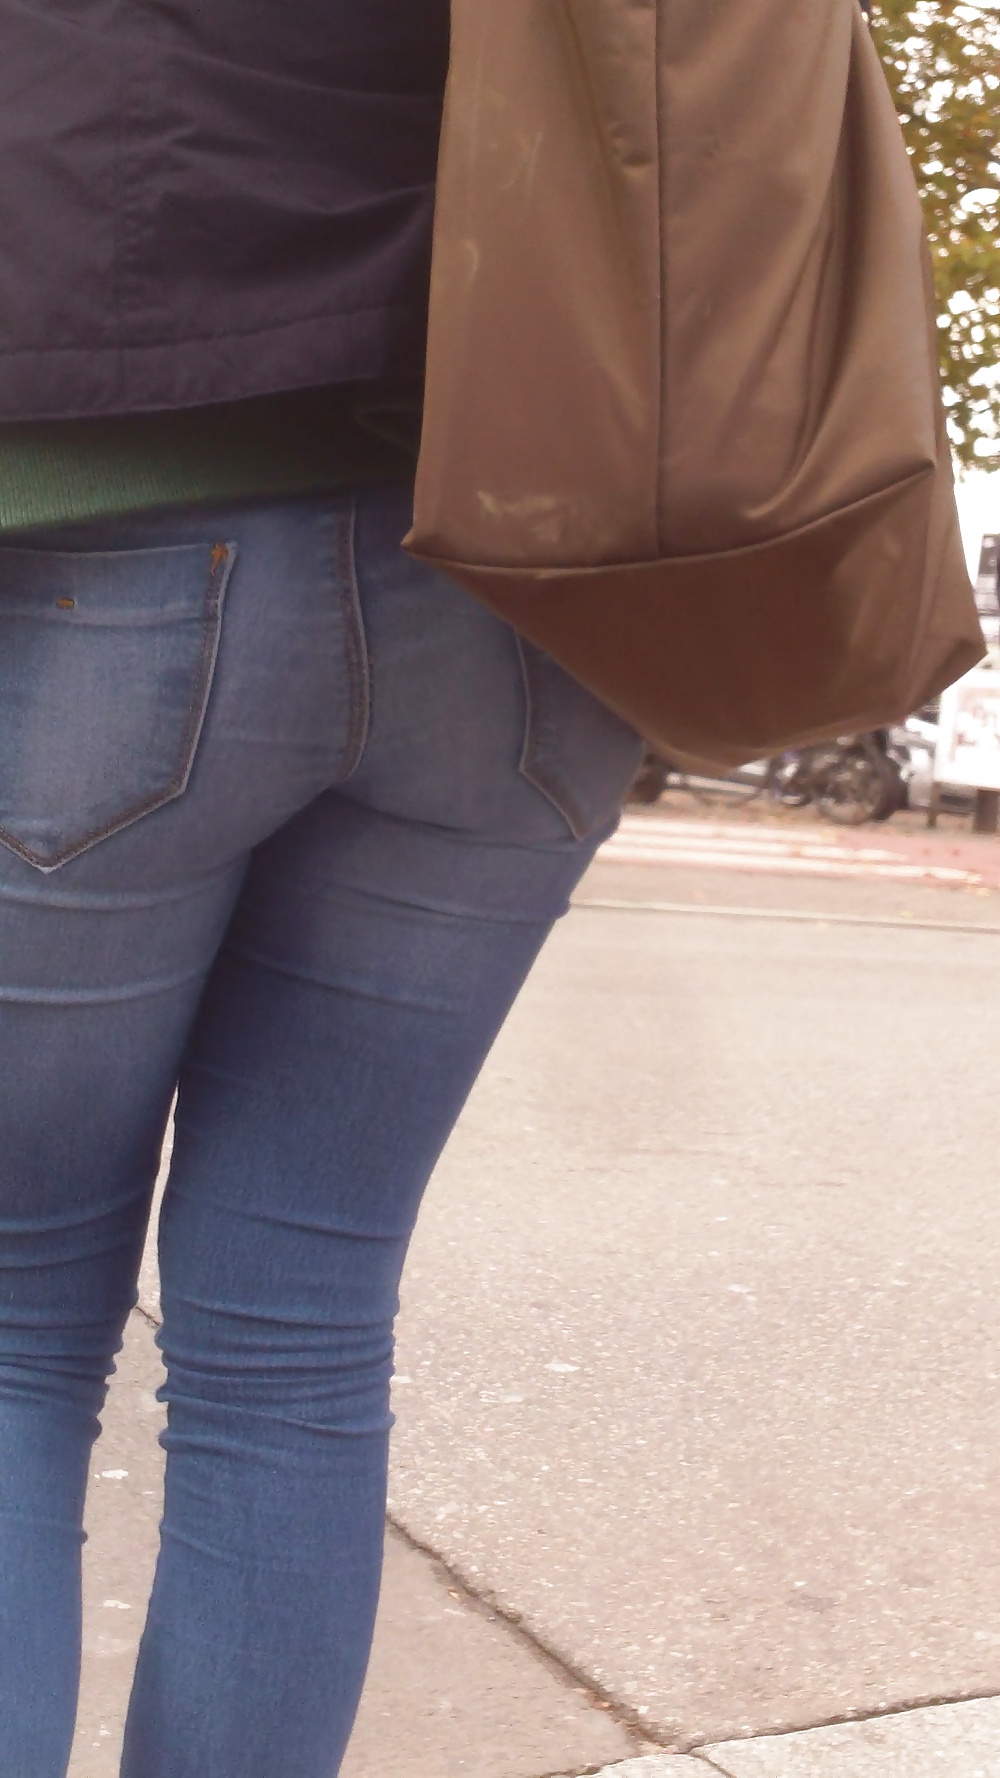 Popular teen girls ass & butt in jeans Part 6 #32010378